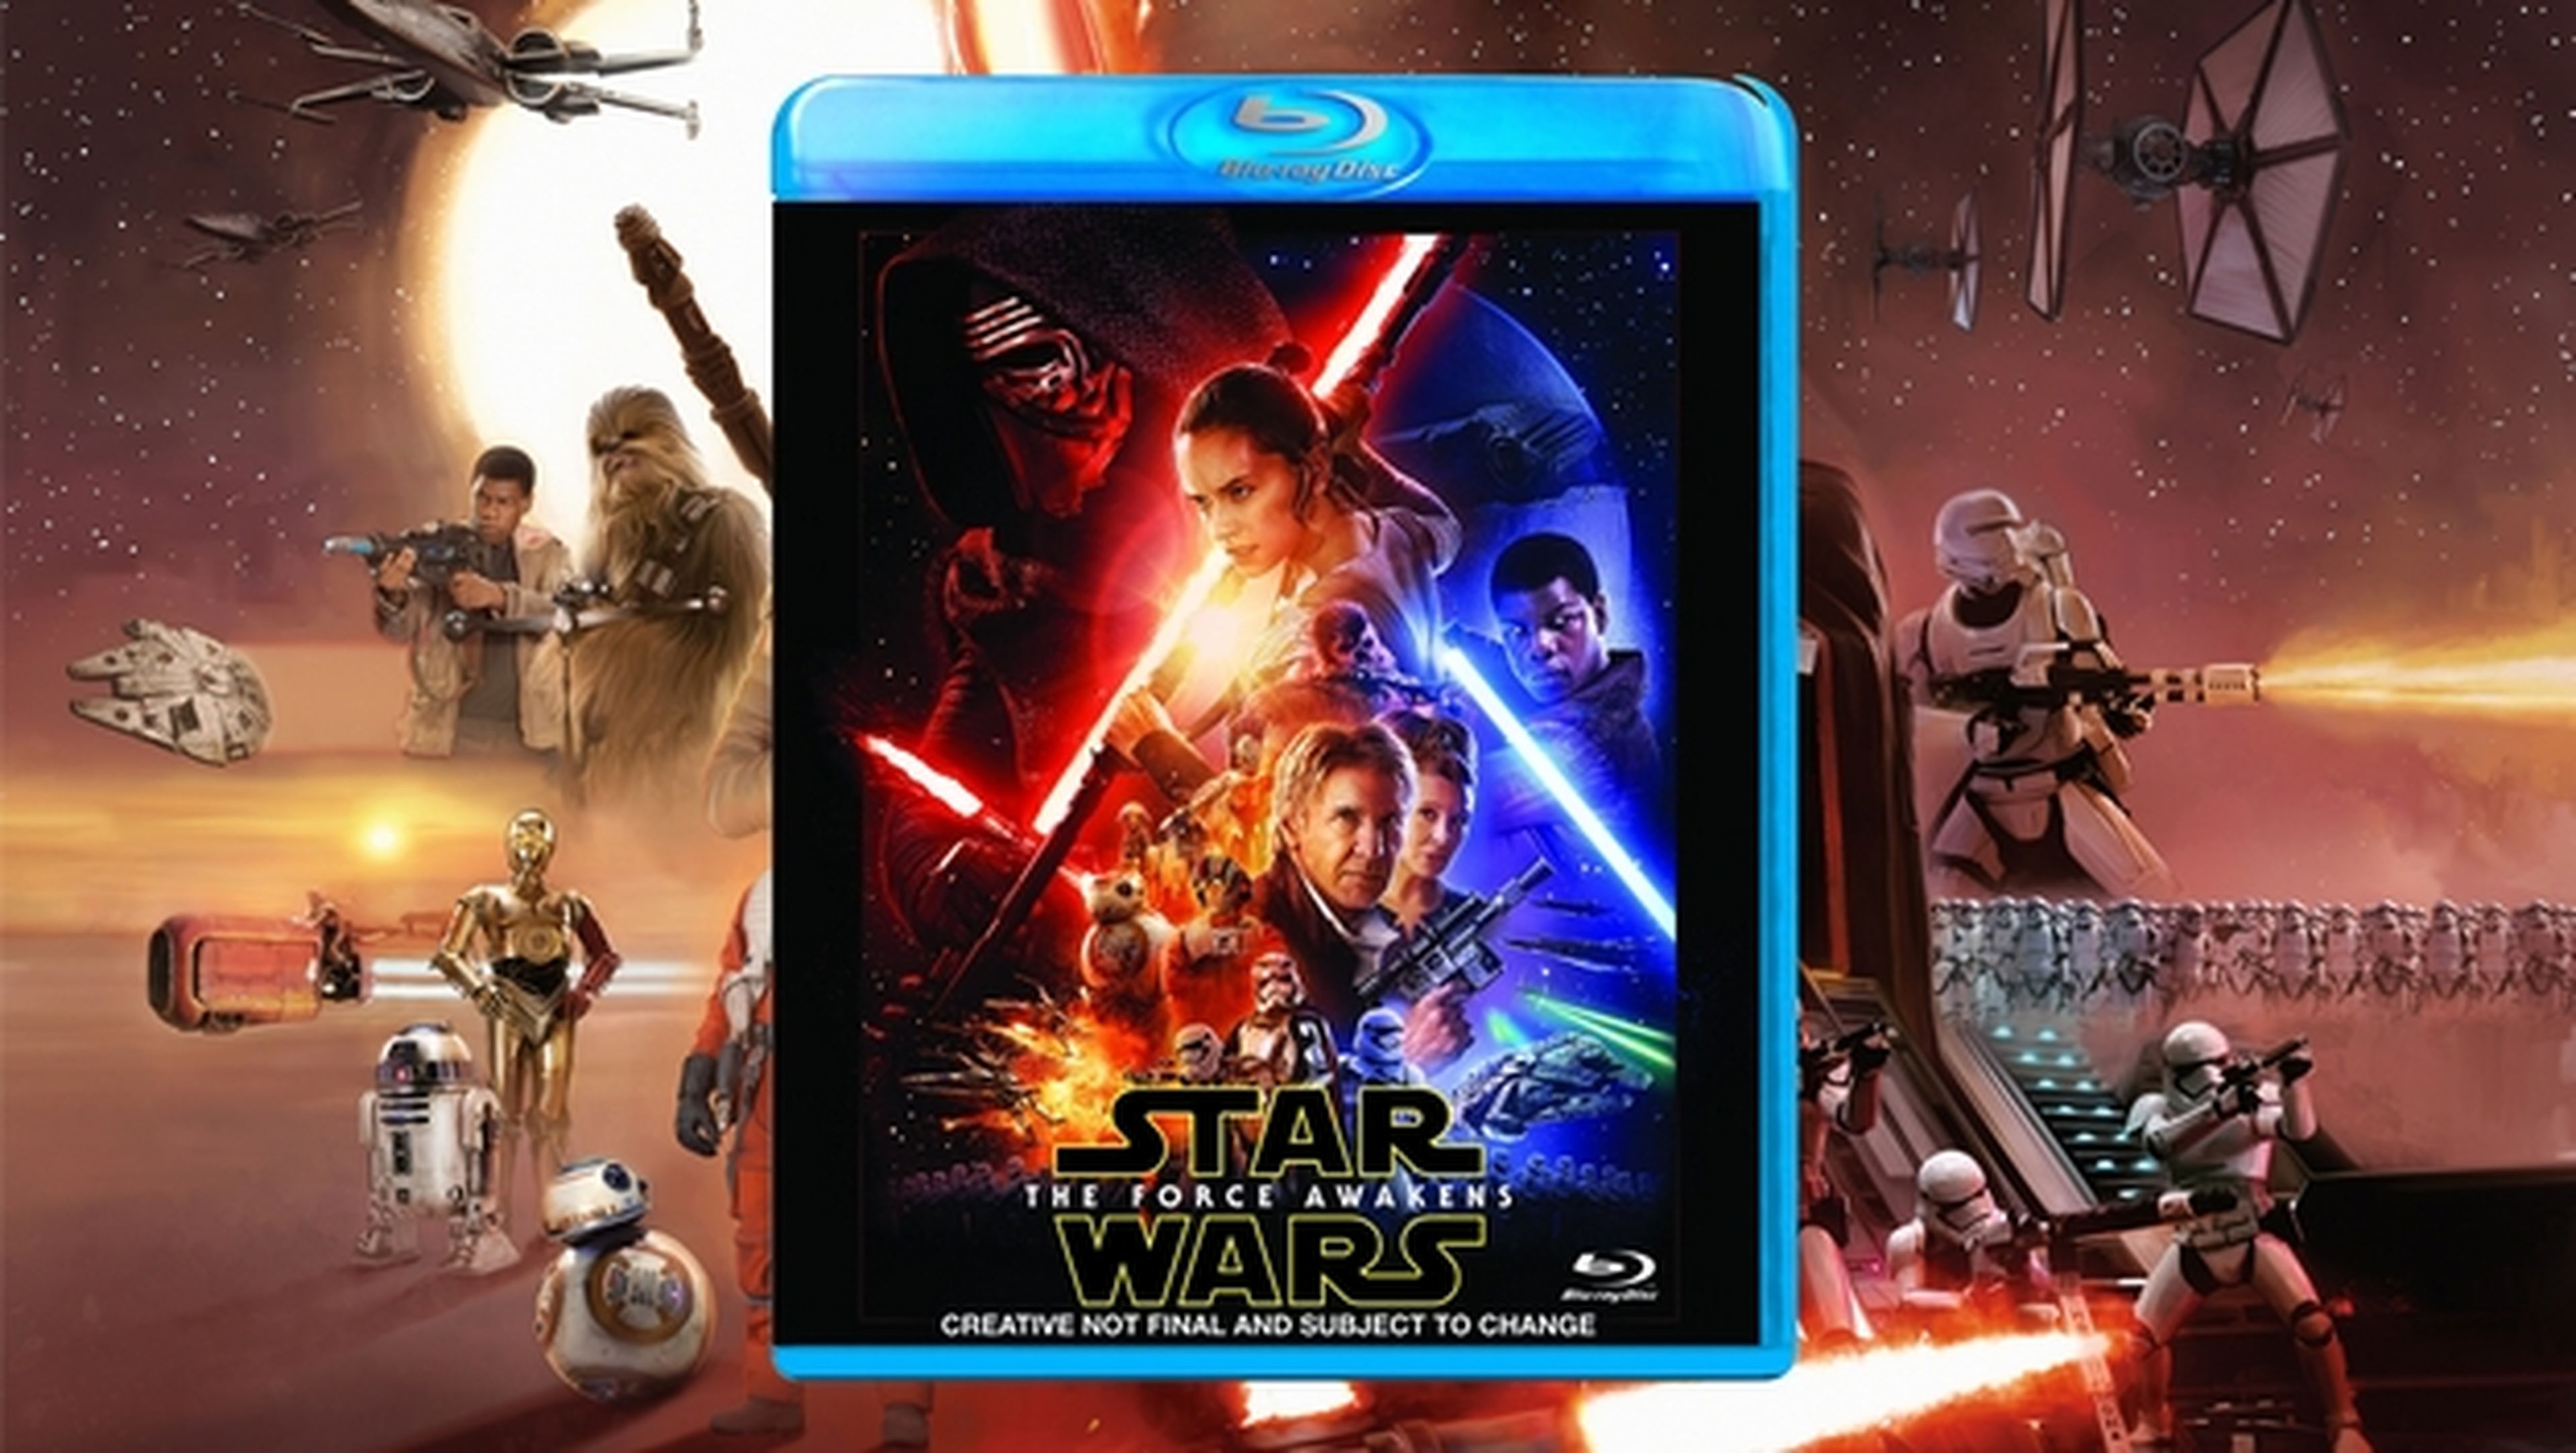 Star Wars El Despertar de la Fuerza no tendrá versión extendida en DVD y Blu-Ray